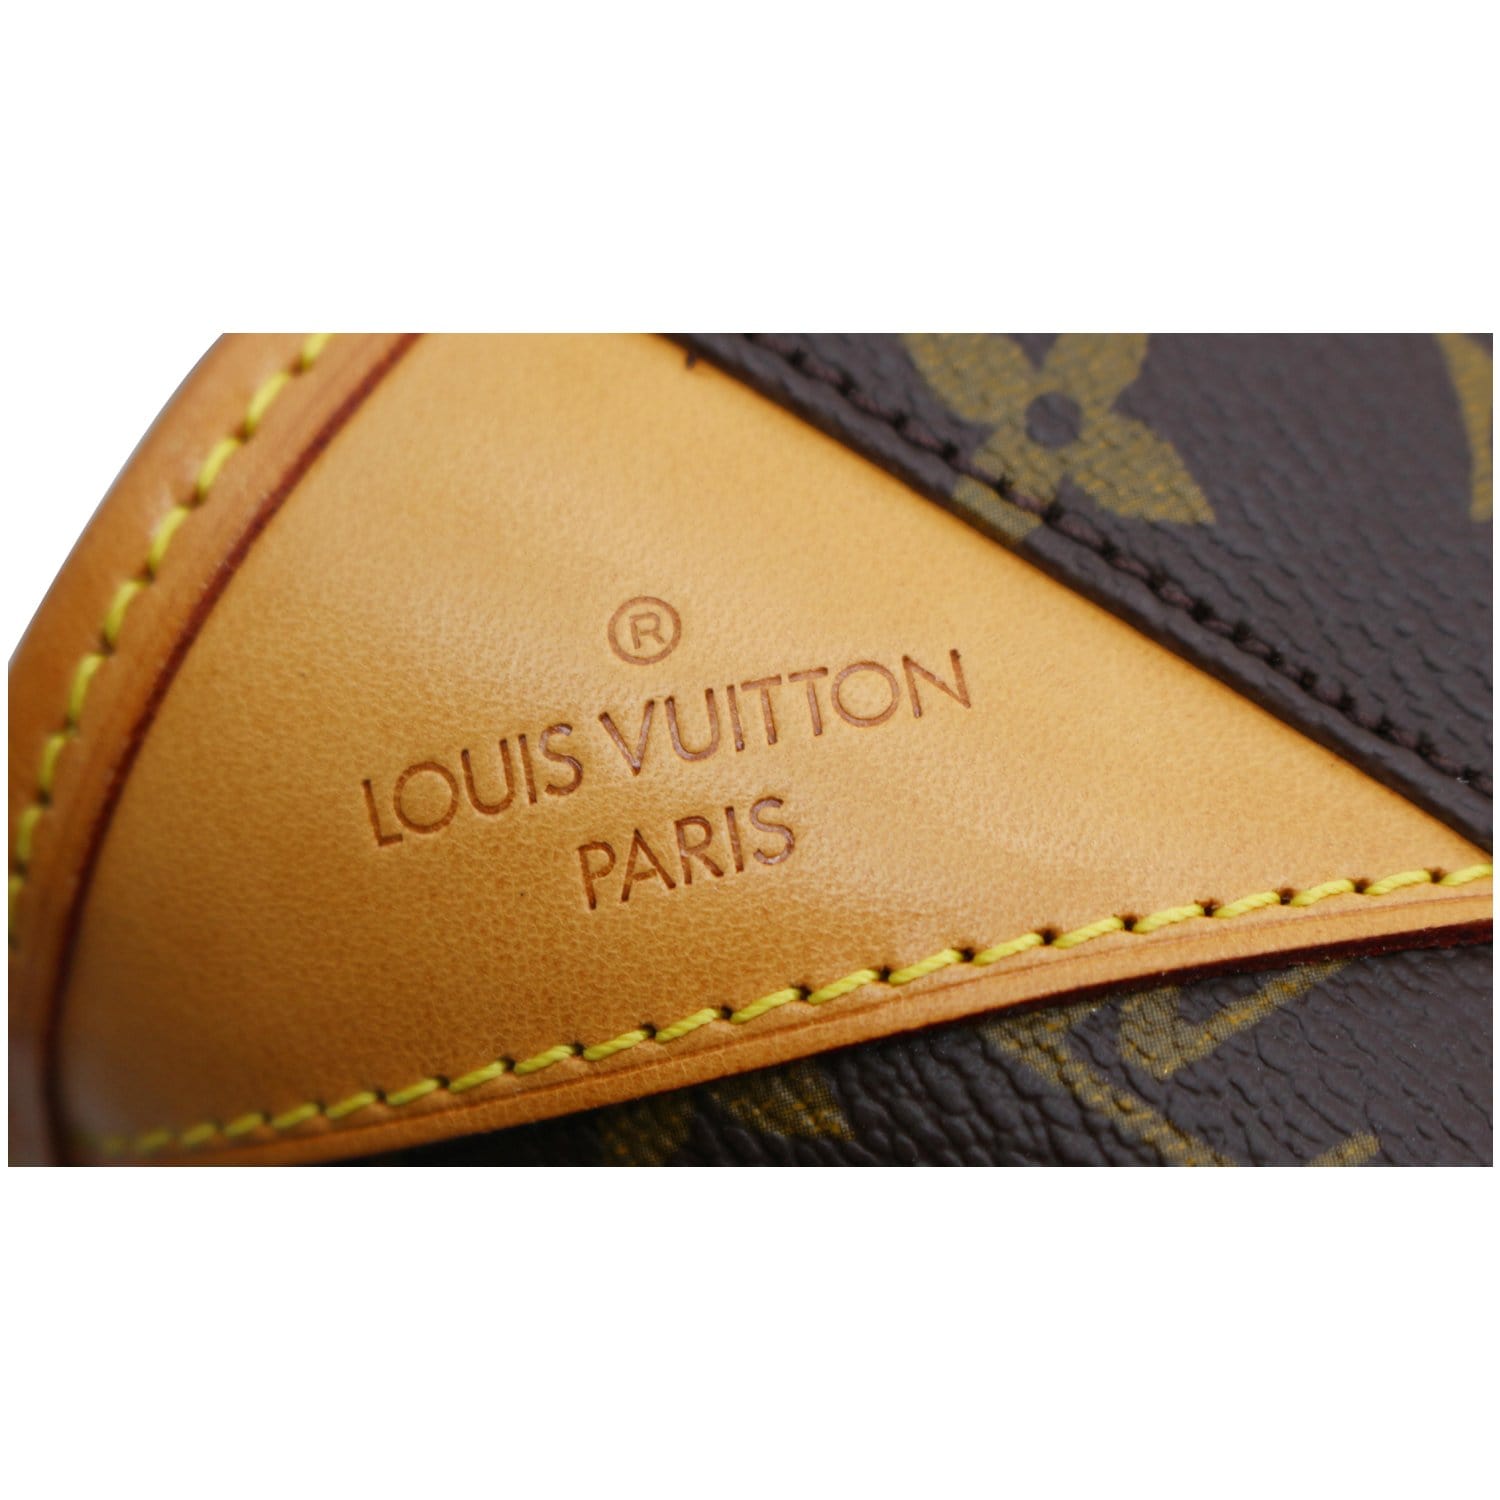 Louis Vuitton Monogram Canvas Vintage Malletier French Purse